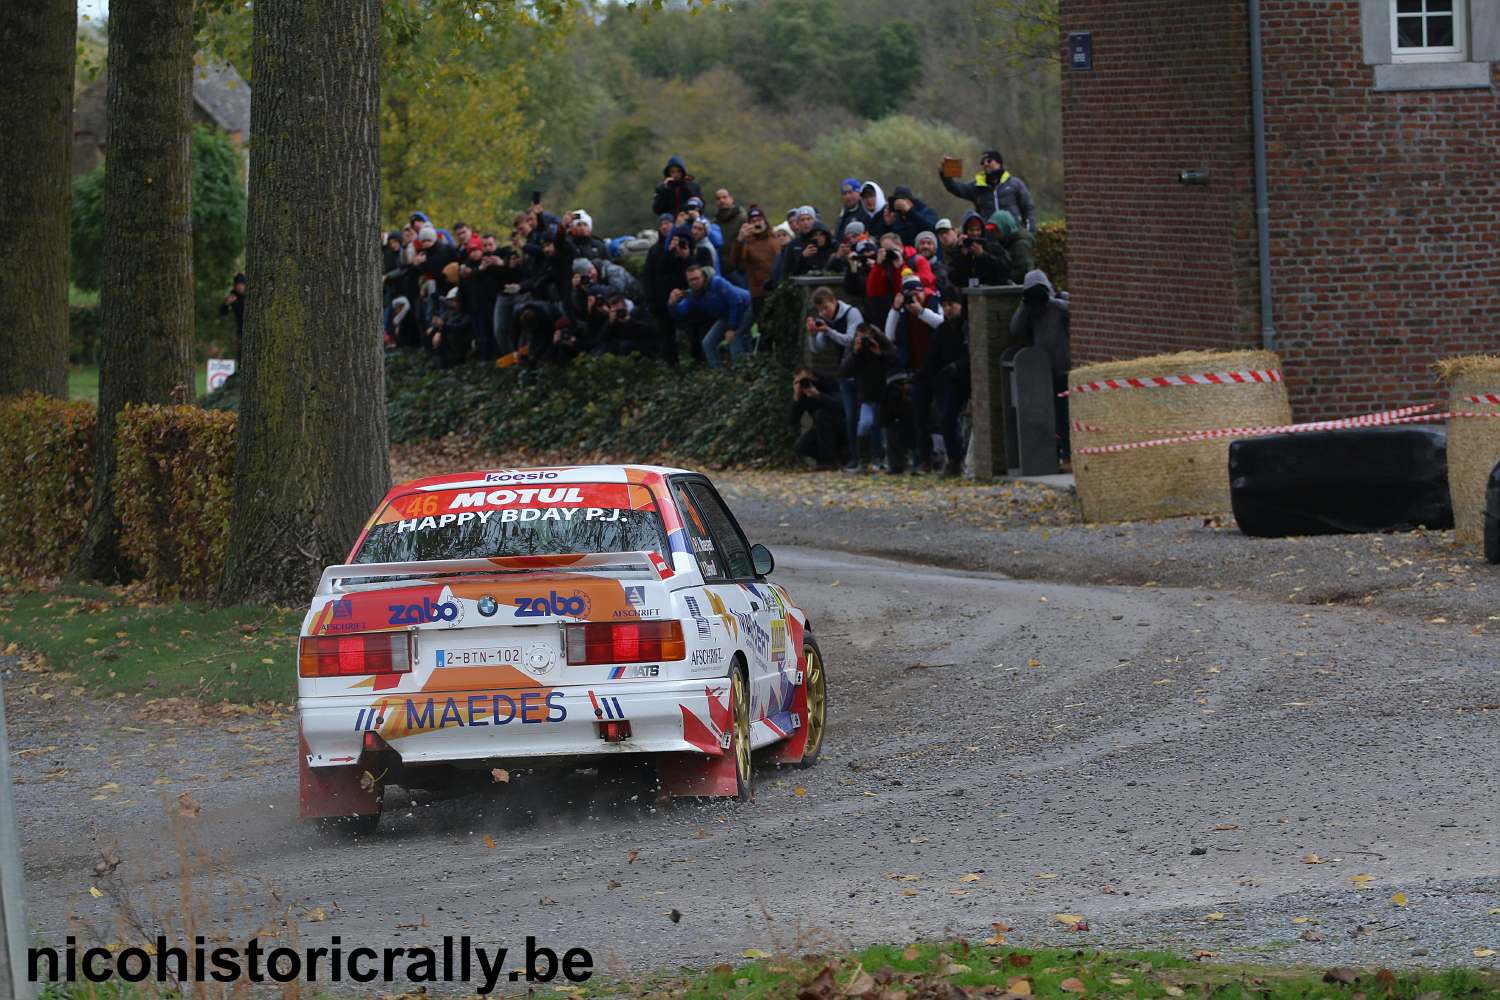 Verslag Condroz Rally: Pieter-Jan Maeyaert oppermachtig met de BMW M3 E30 !